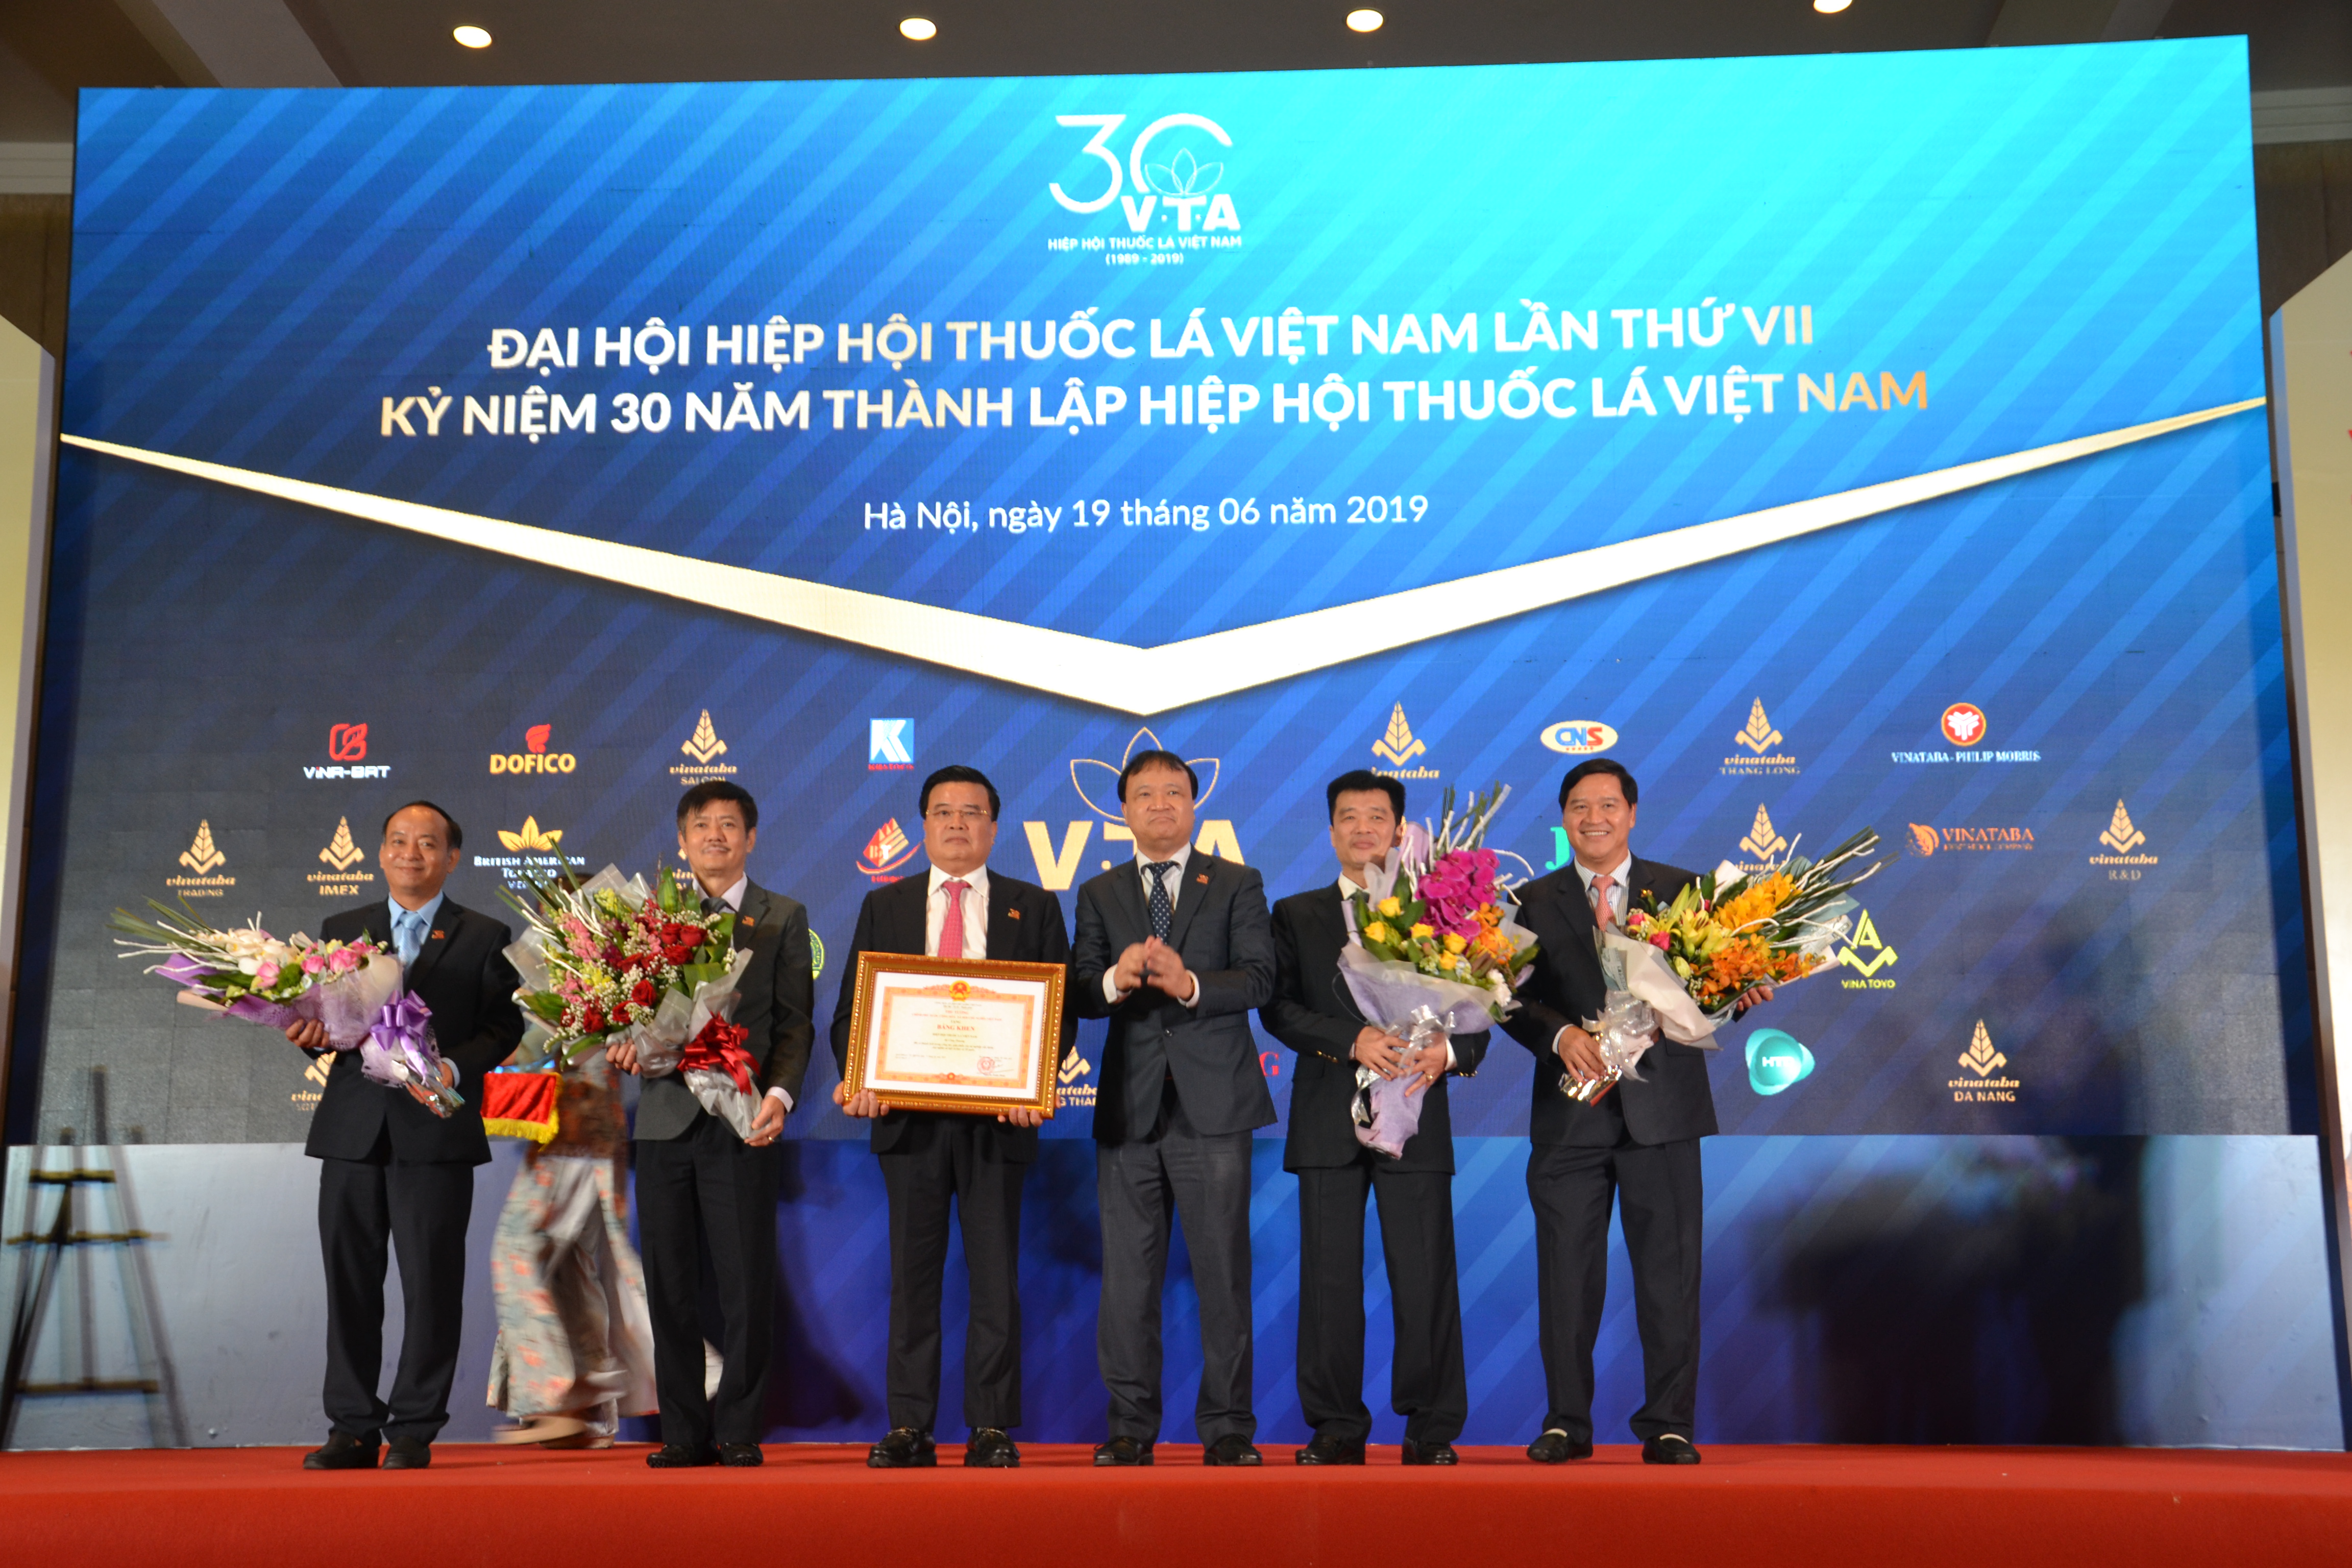 Thứ trưởng Đỗ Thắng Hải trao Bằng khen của Thủ tướng Chính phủ cho ông Vũ Văn Cường, nguyên Chủ tịch VTA nhiệm kỳ 2013 - 2018